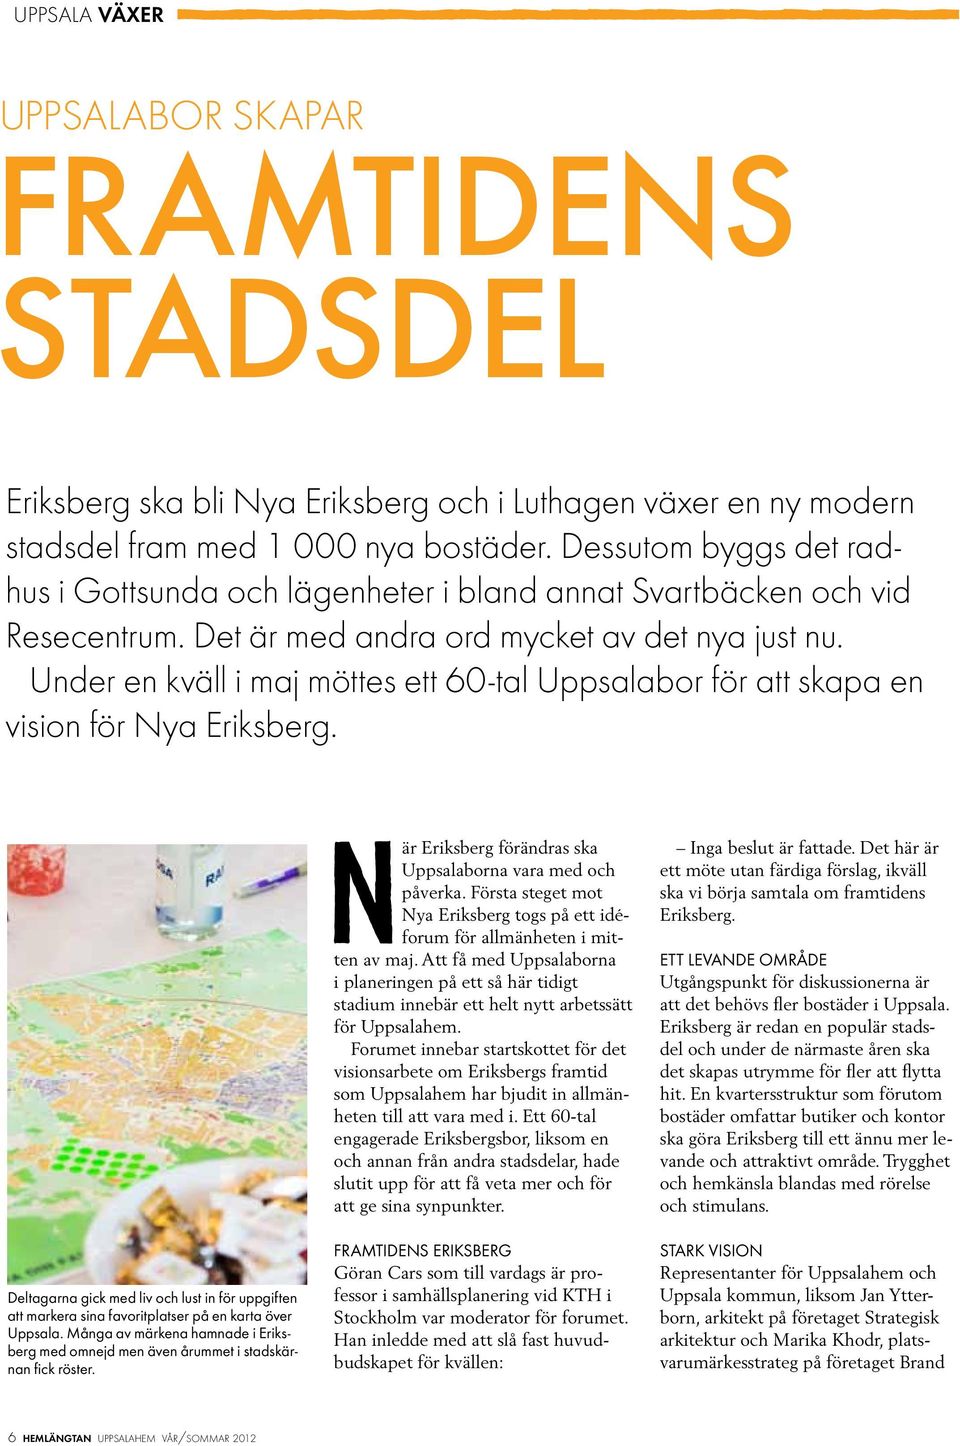 Under en kväll i maj möttes ett 60-tal Uppsalabor för att skapa en vision för Nya Eriksberg. Deltagarna gick med liv och lust in för uppgiften att markera sina favoritplatser på en karta över Uppsala.